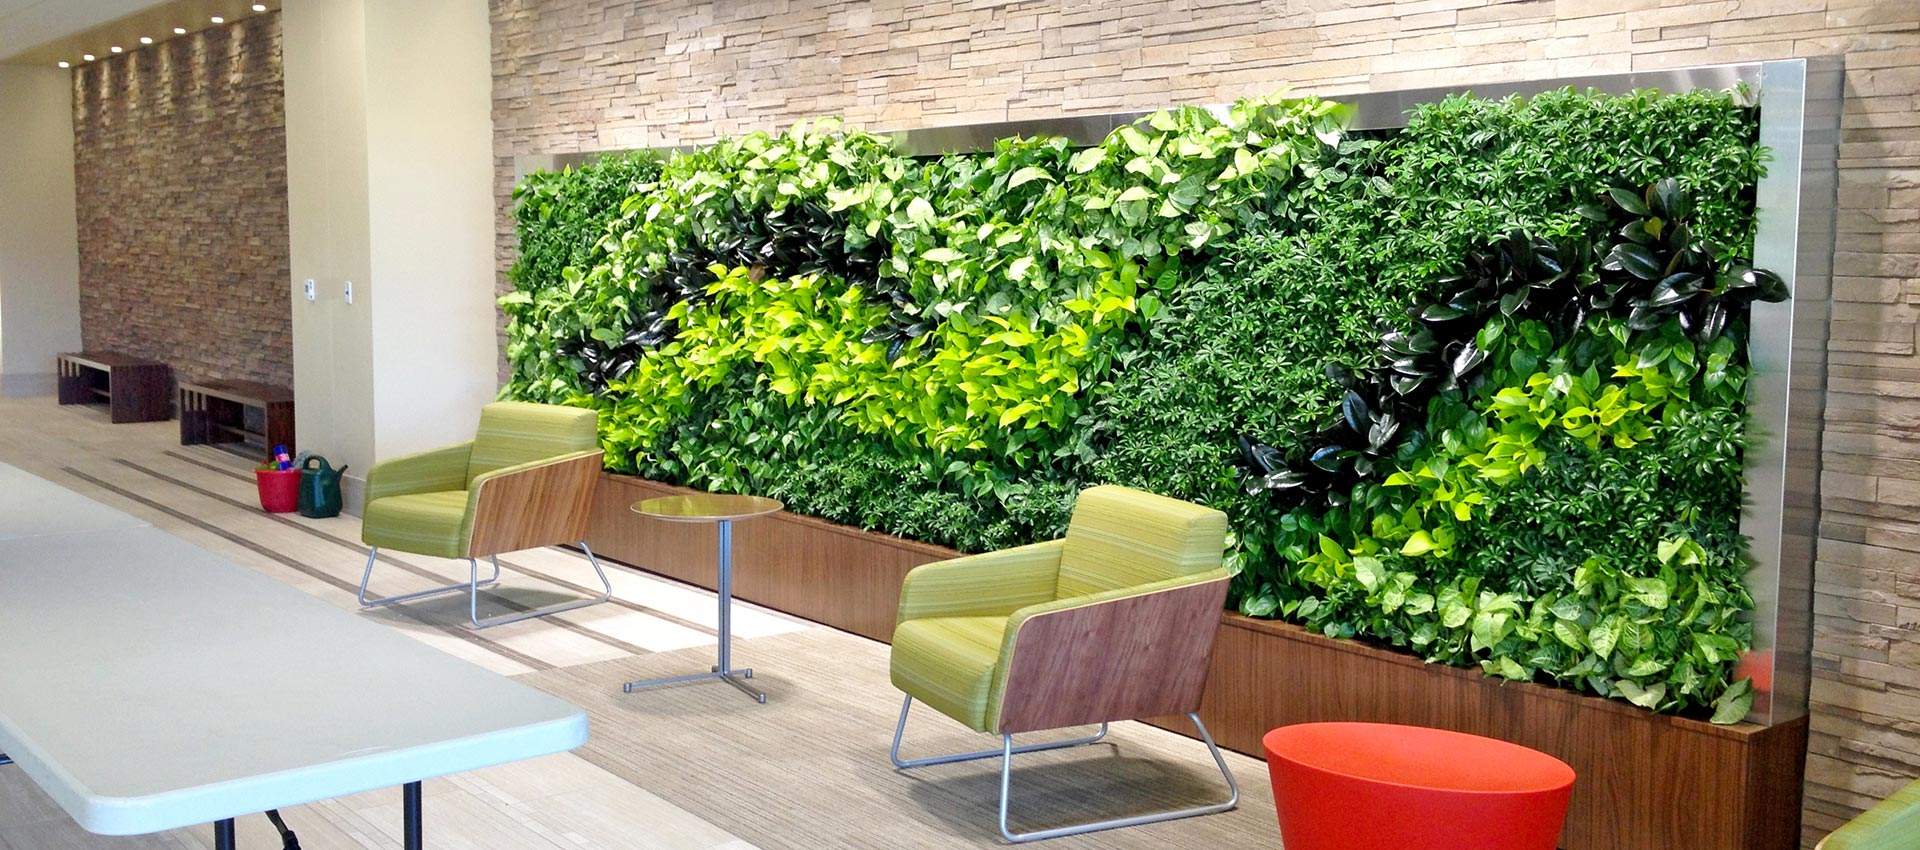 仿真绿植墙绿化墙体装饰植物墙